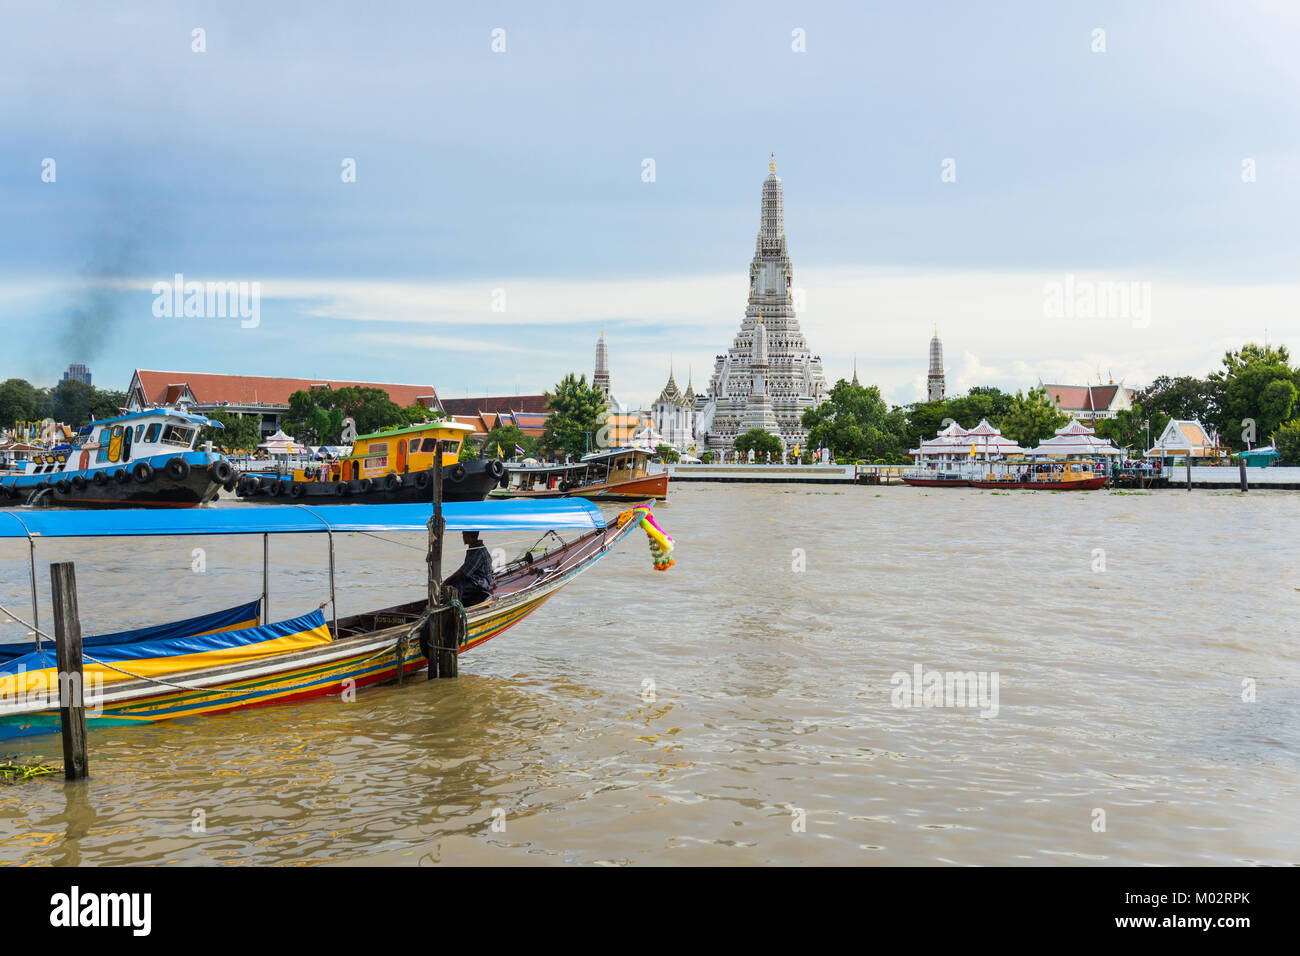 Asie,Thaïlande,Bangkok,bateau typique sur la rivière Chao Phraya, Wat Arun temple en arrière-plan Banque D'Images